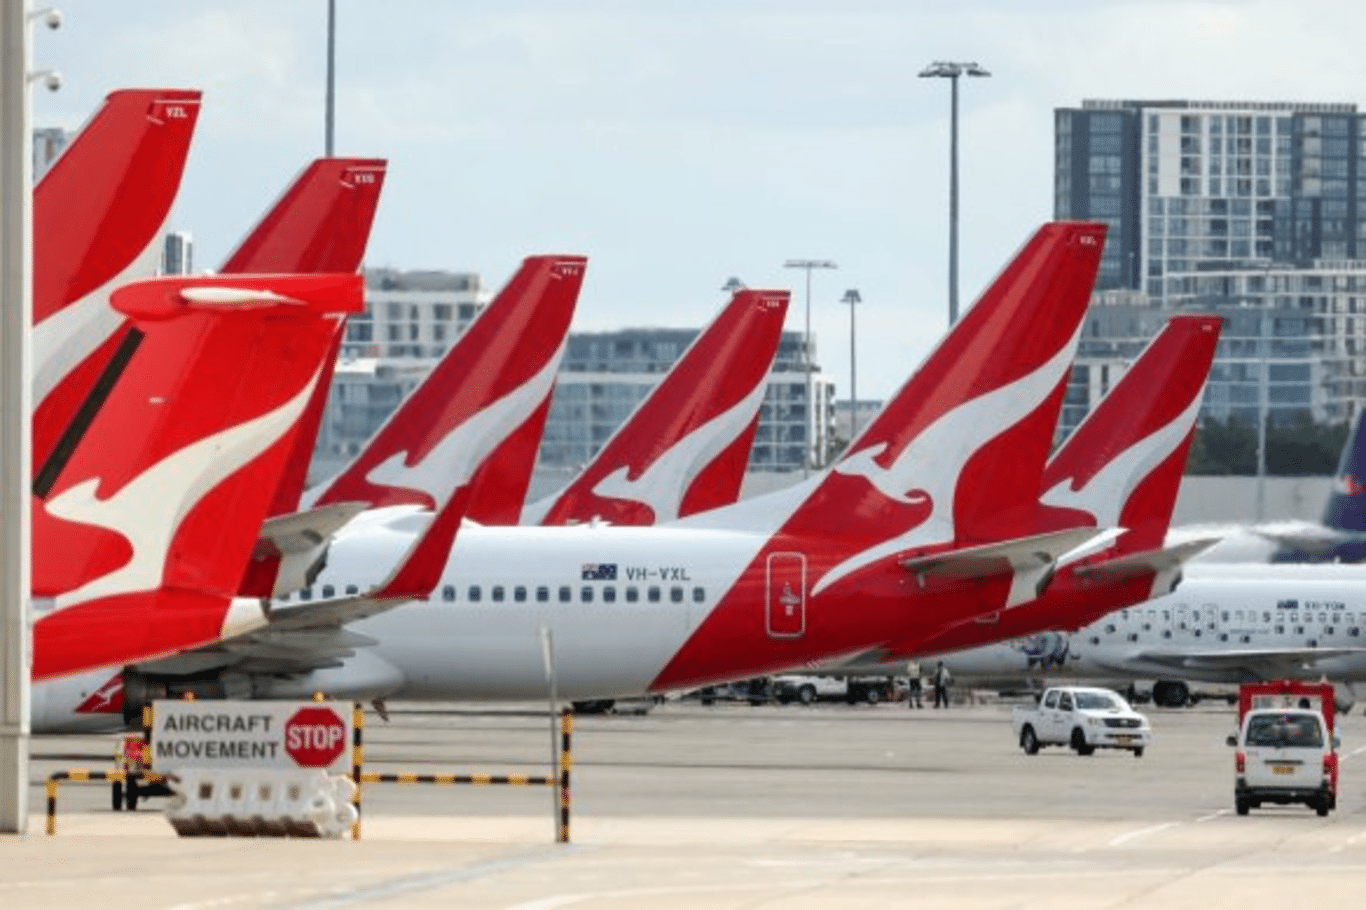 Qantas' First Overseas Flight: Do You Know the Destination?